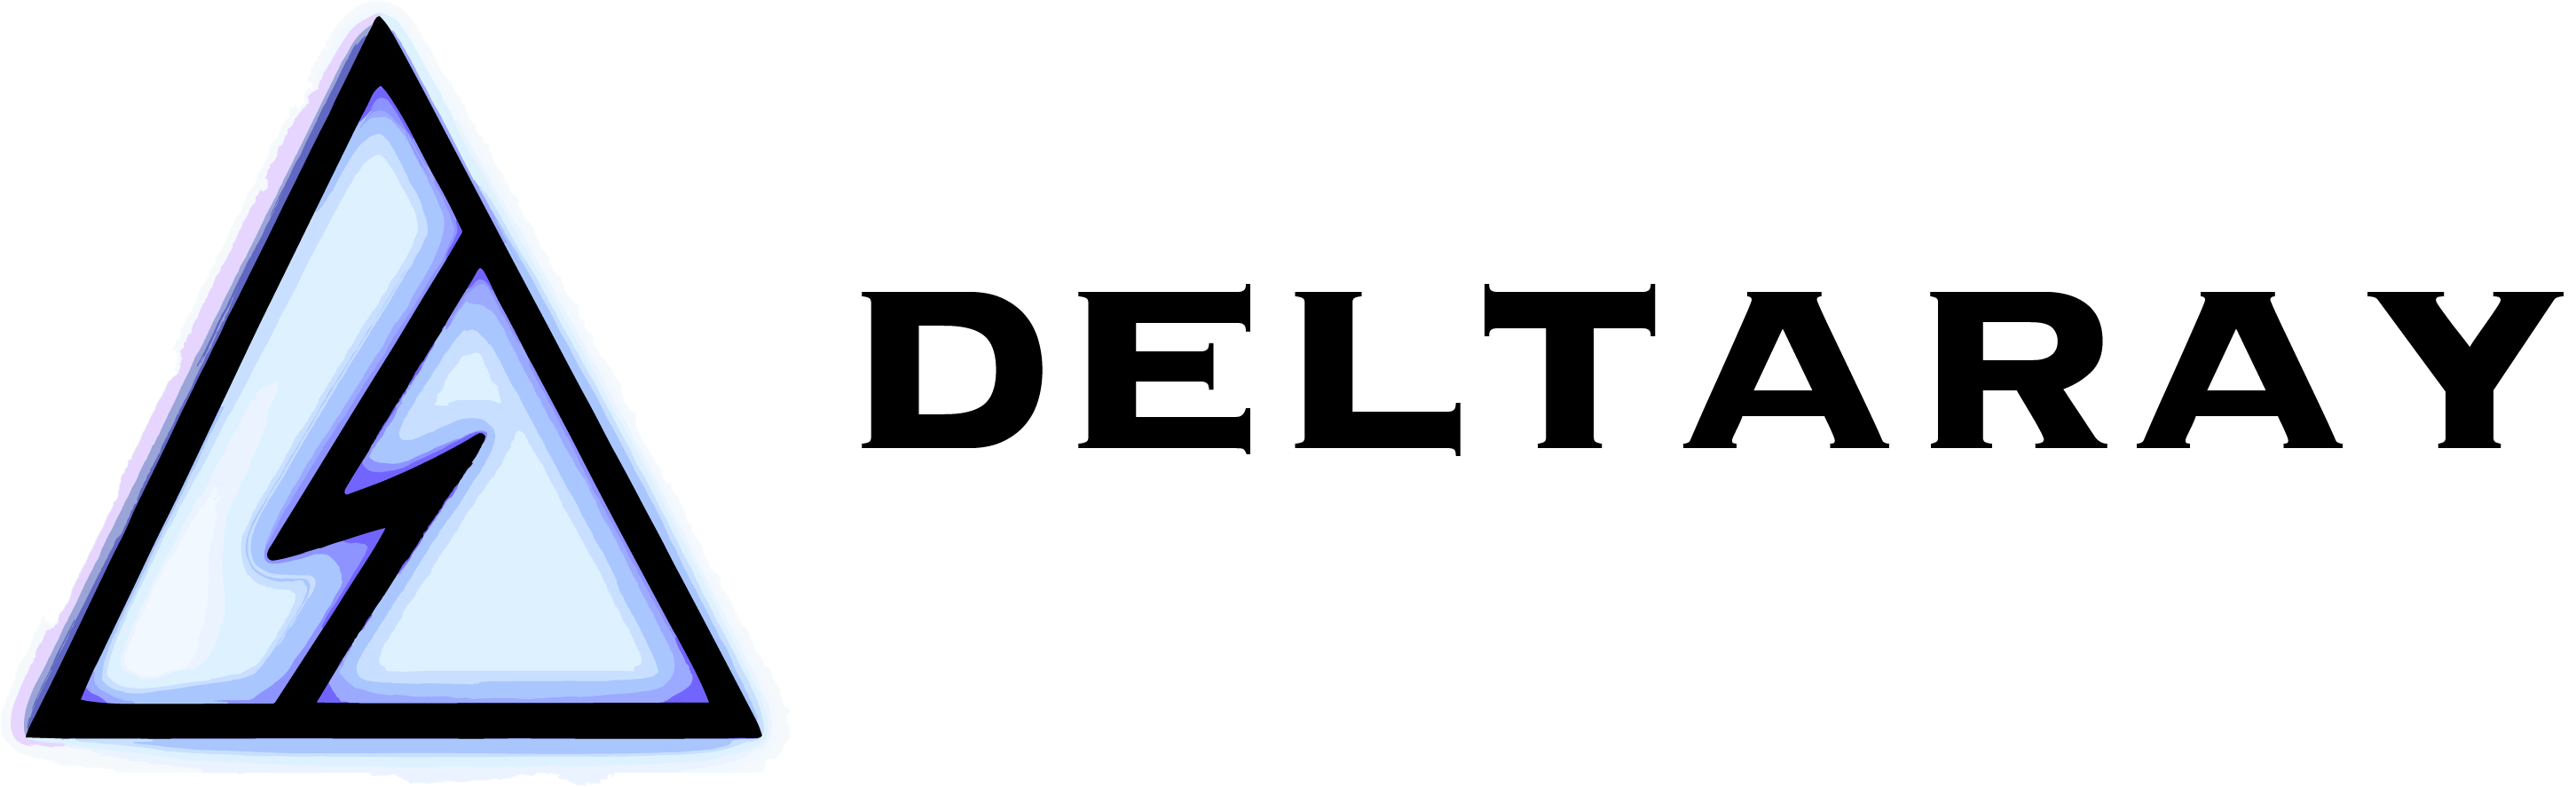 deltaray logo